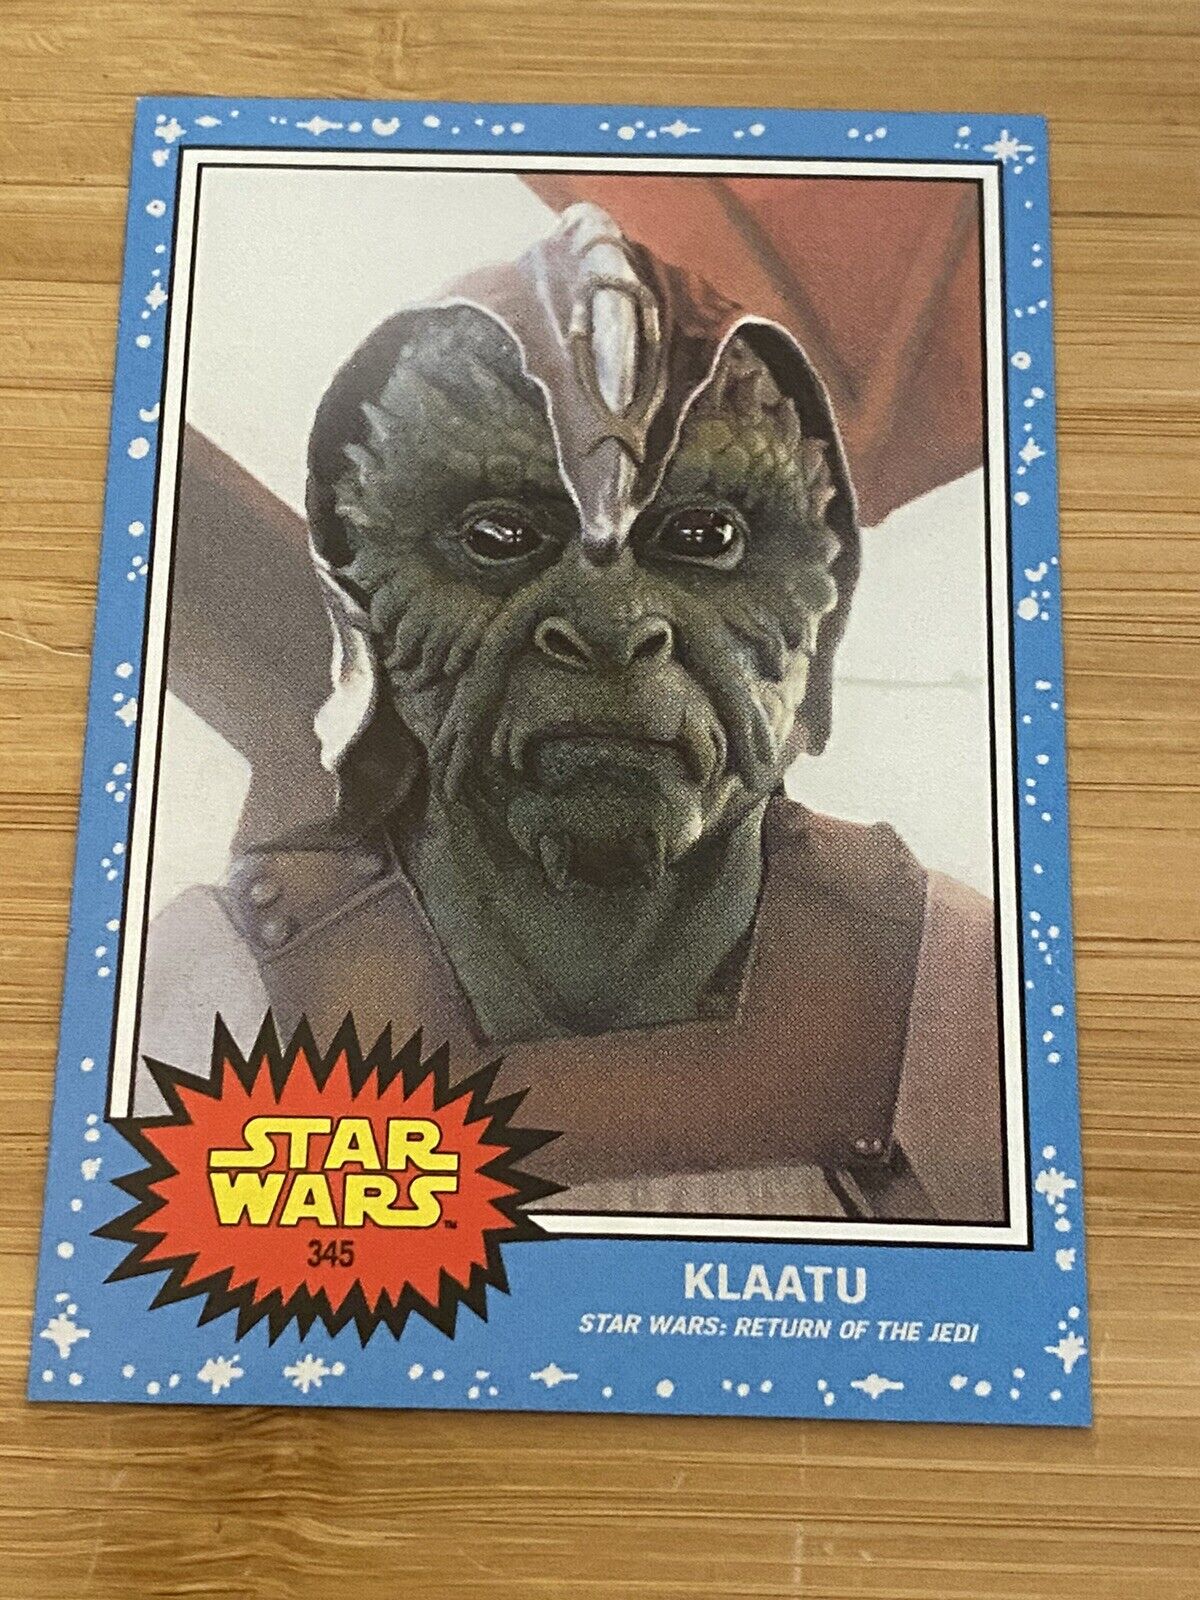 Star Wars: Return Of The Jedi “KLAATU” 2022 Topps Living Card #345